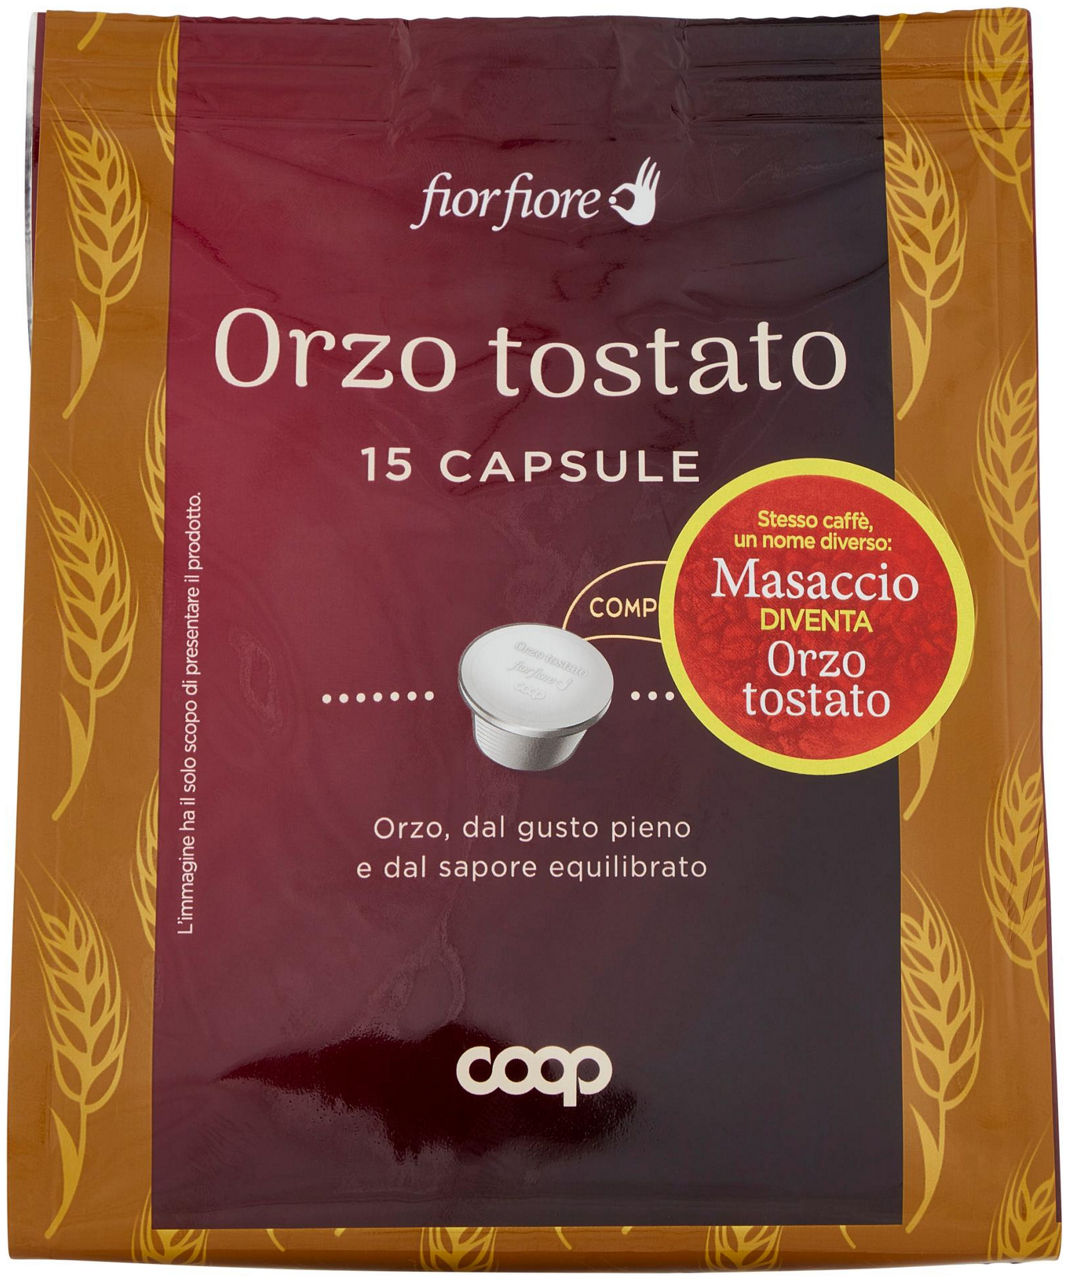 Orzo tostato in capsule 'masaccio' fior fiore coop pz. 15 sacchetto g 75